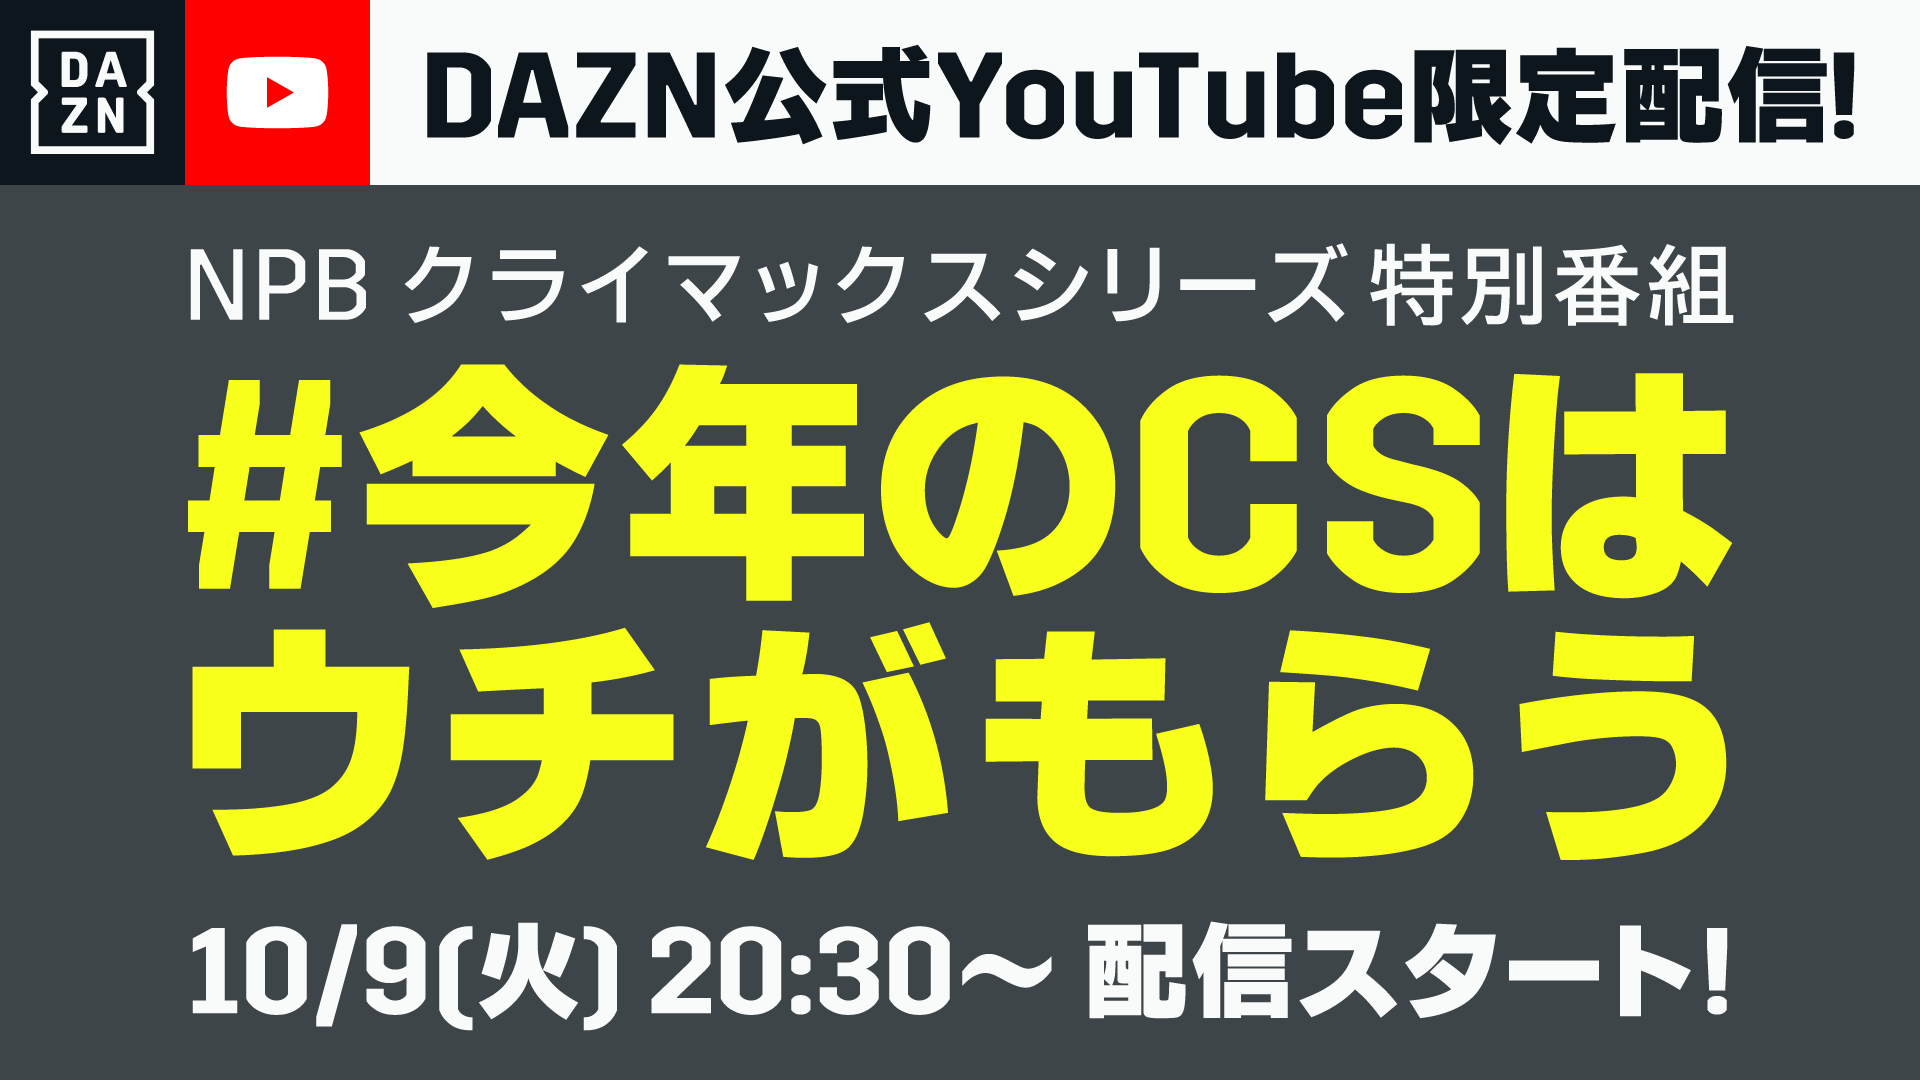 Pr Daznが公式youtubeチャンネルでcs特番放送 ツイッターでもリアルタイム配信へ Full Count